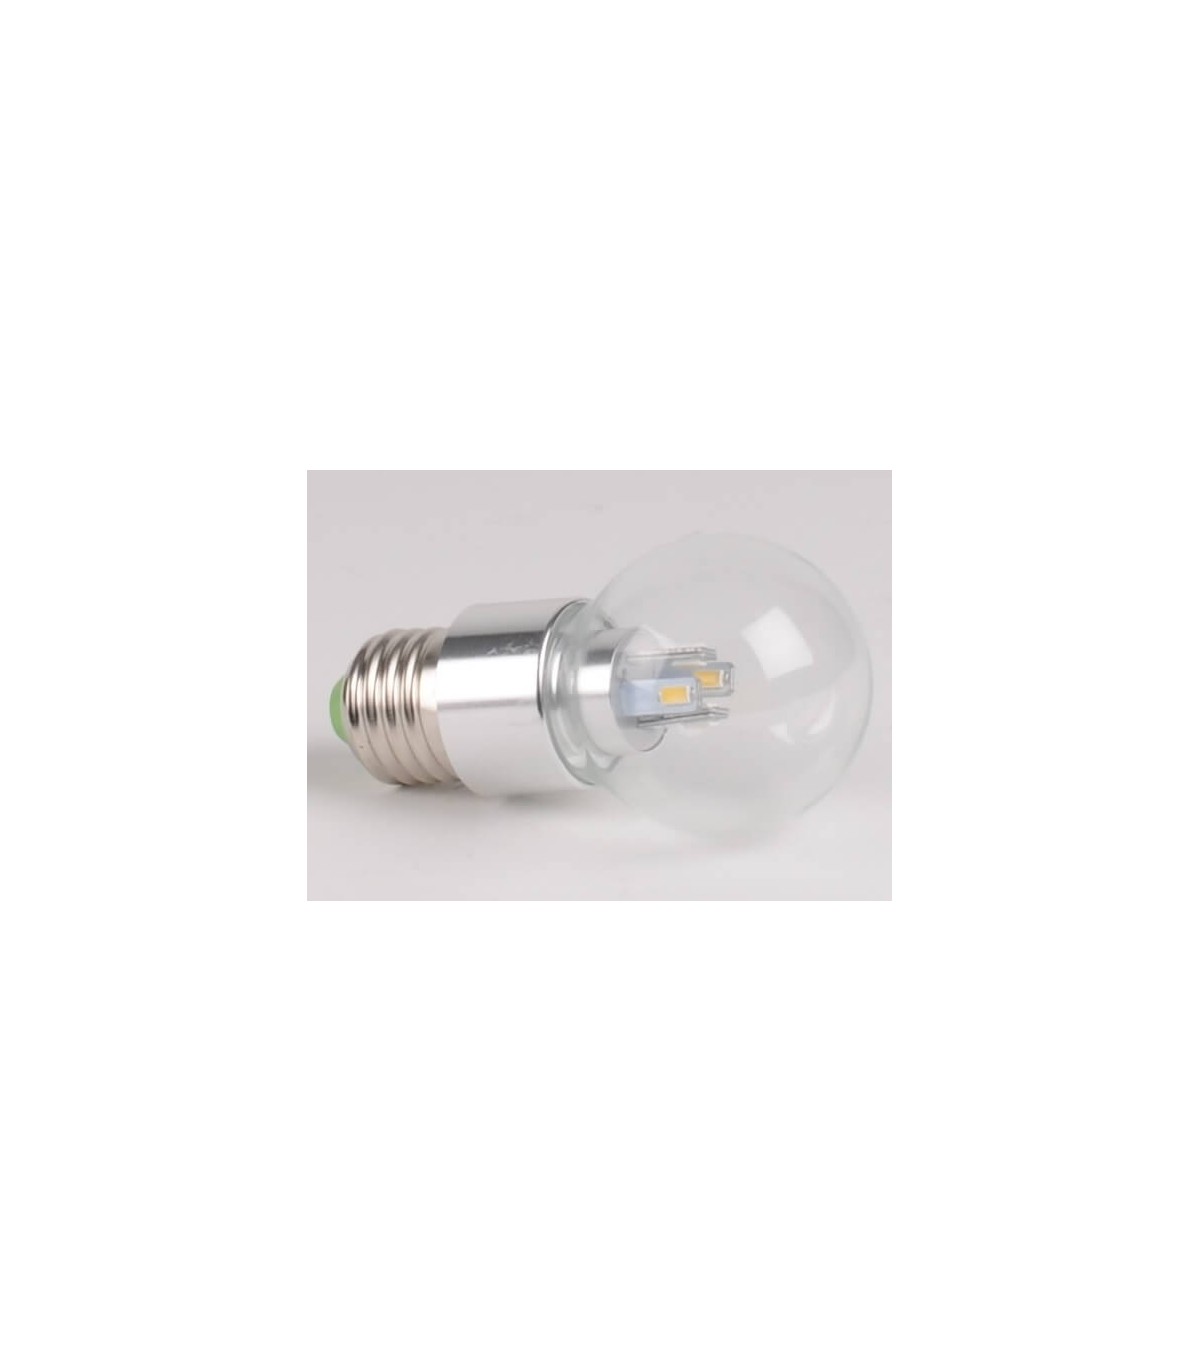 Ampoule spot LED E14 blanc froid 345 lm 4,5 W SYLVANIA